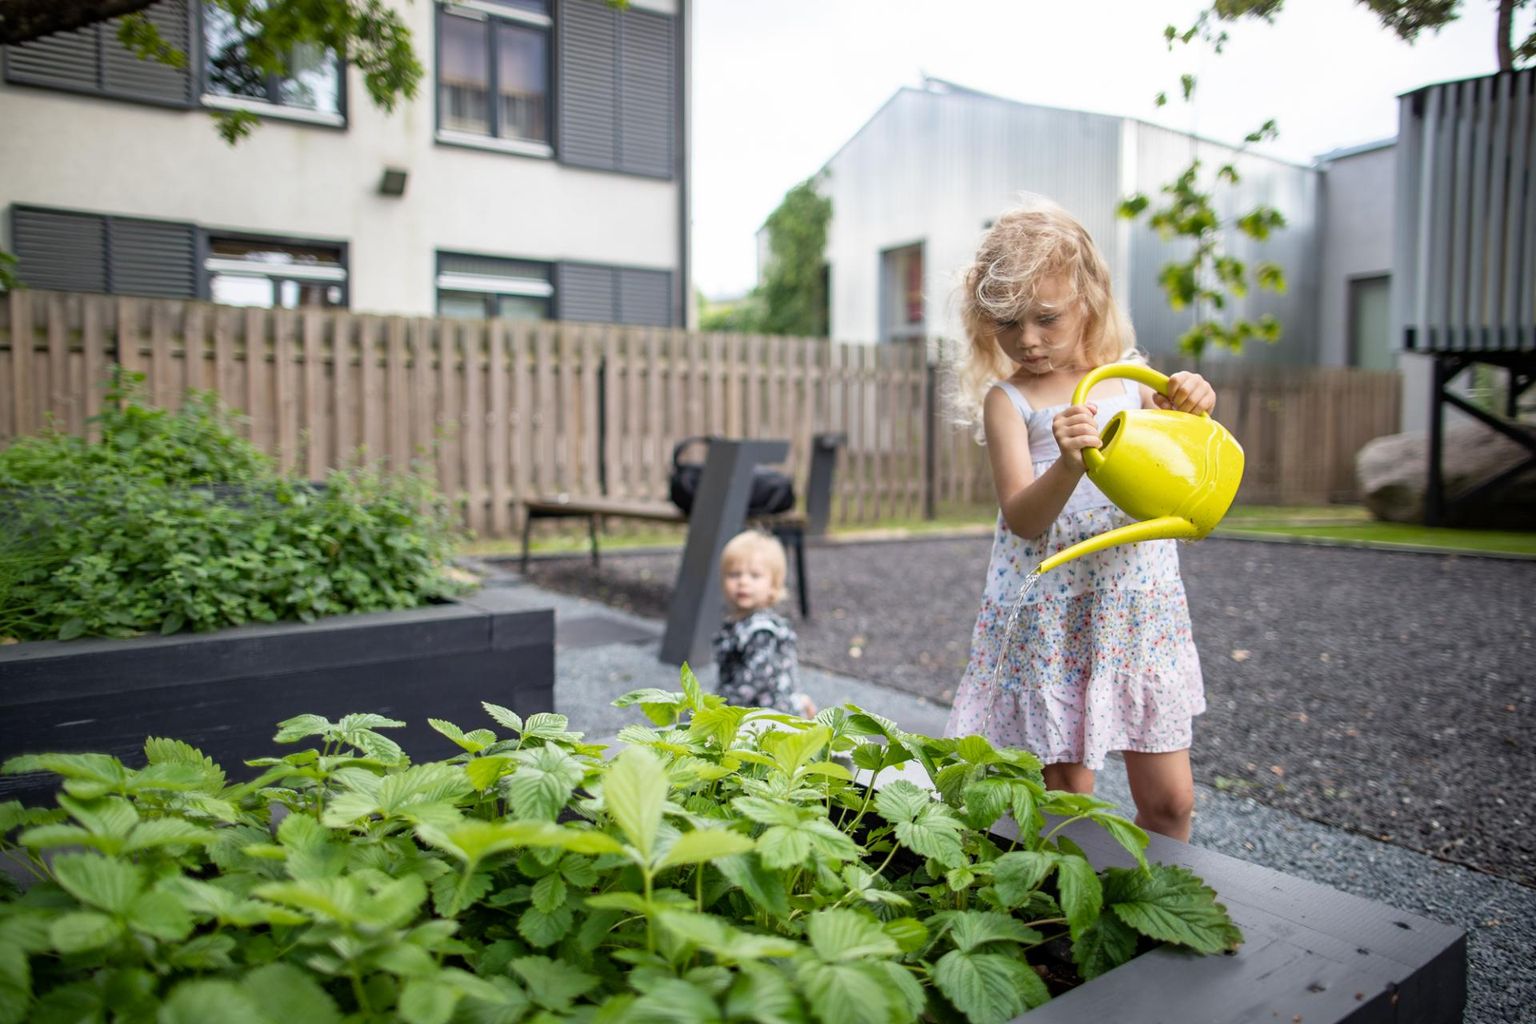 Tallinna 22 kogukonnaaiast uusim avati juuli alguses Vana-Kalamajas ja selles aias on kõik ühine, saadusi jagatakse põhimõttel «ühiselt istutame, ühiselt ka tarbime».